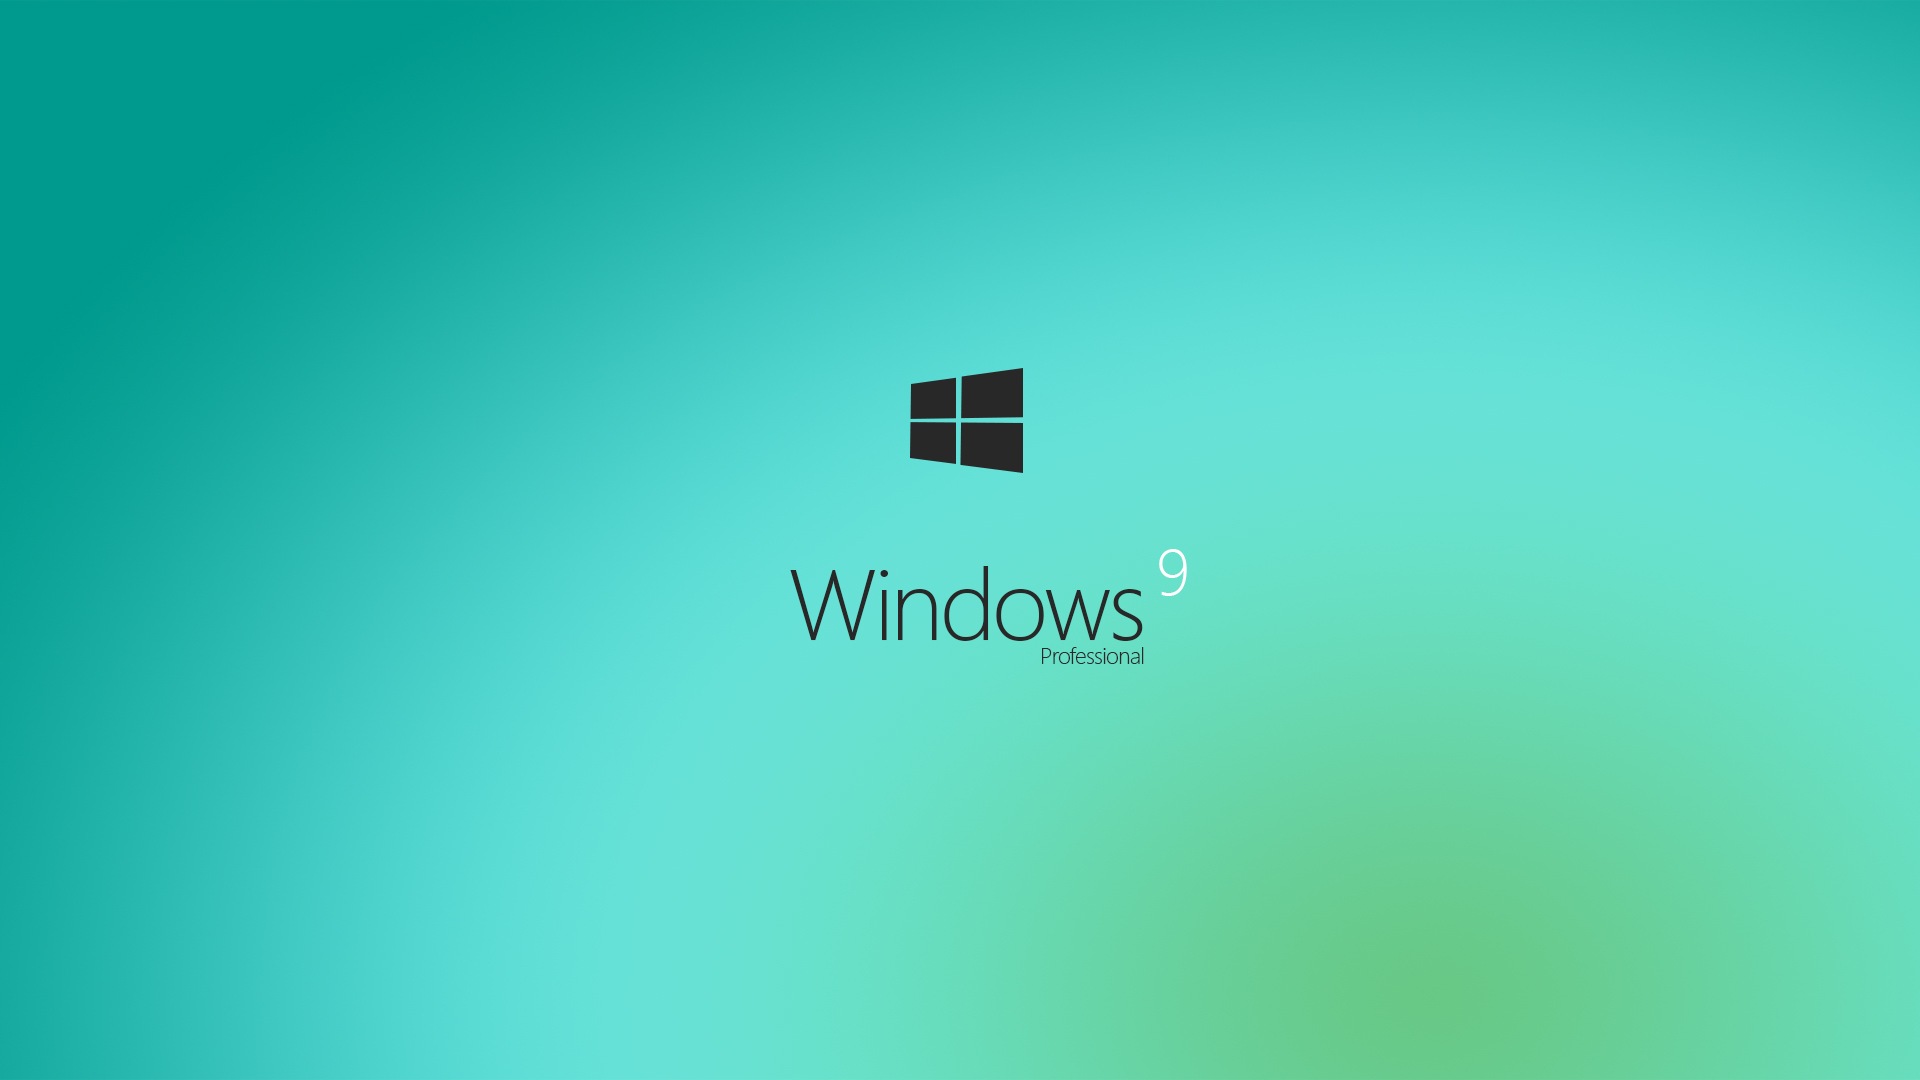 Microsoft Windowsの9システムテーマのHD壁紙 #3 - 1920x1080